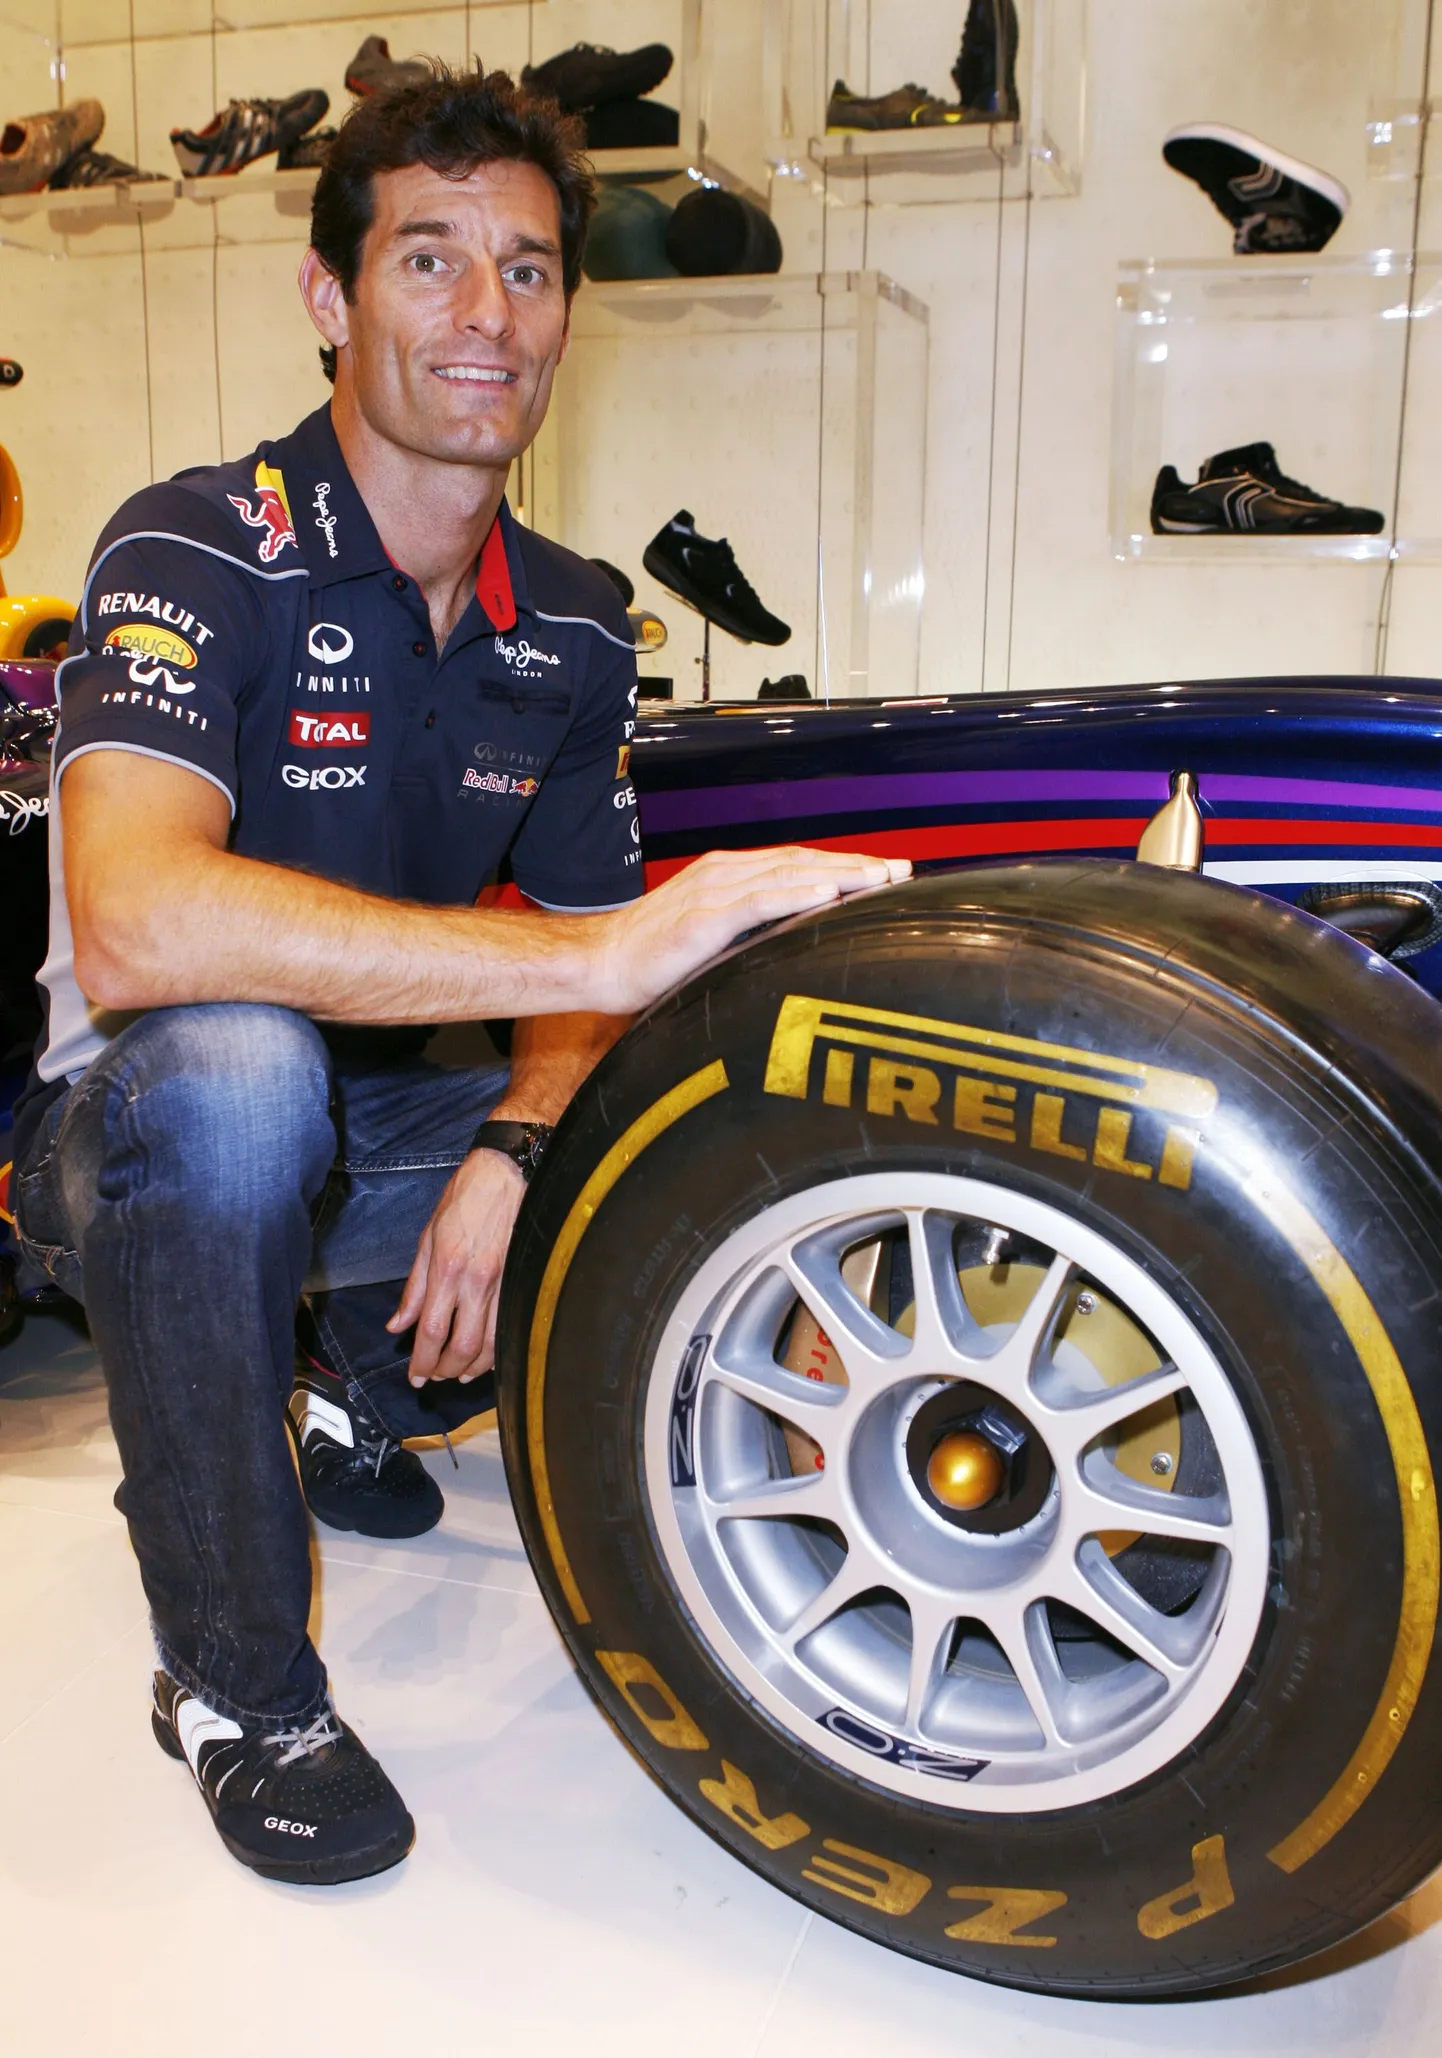 Mark Webber.